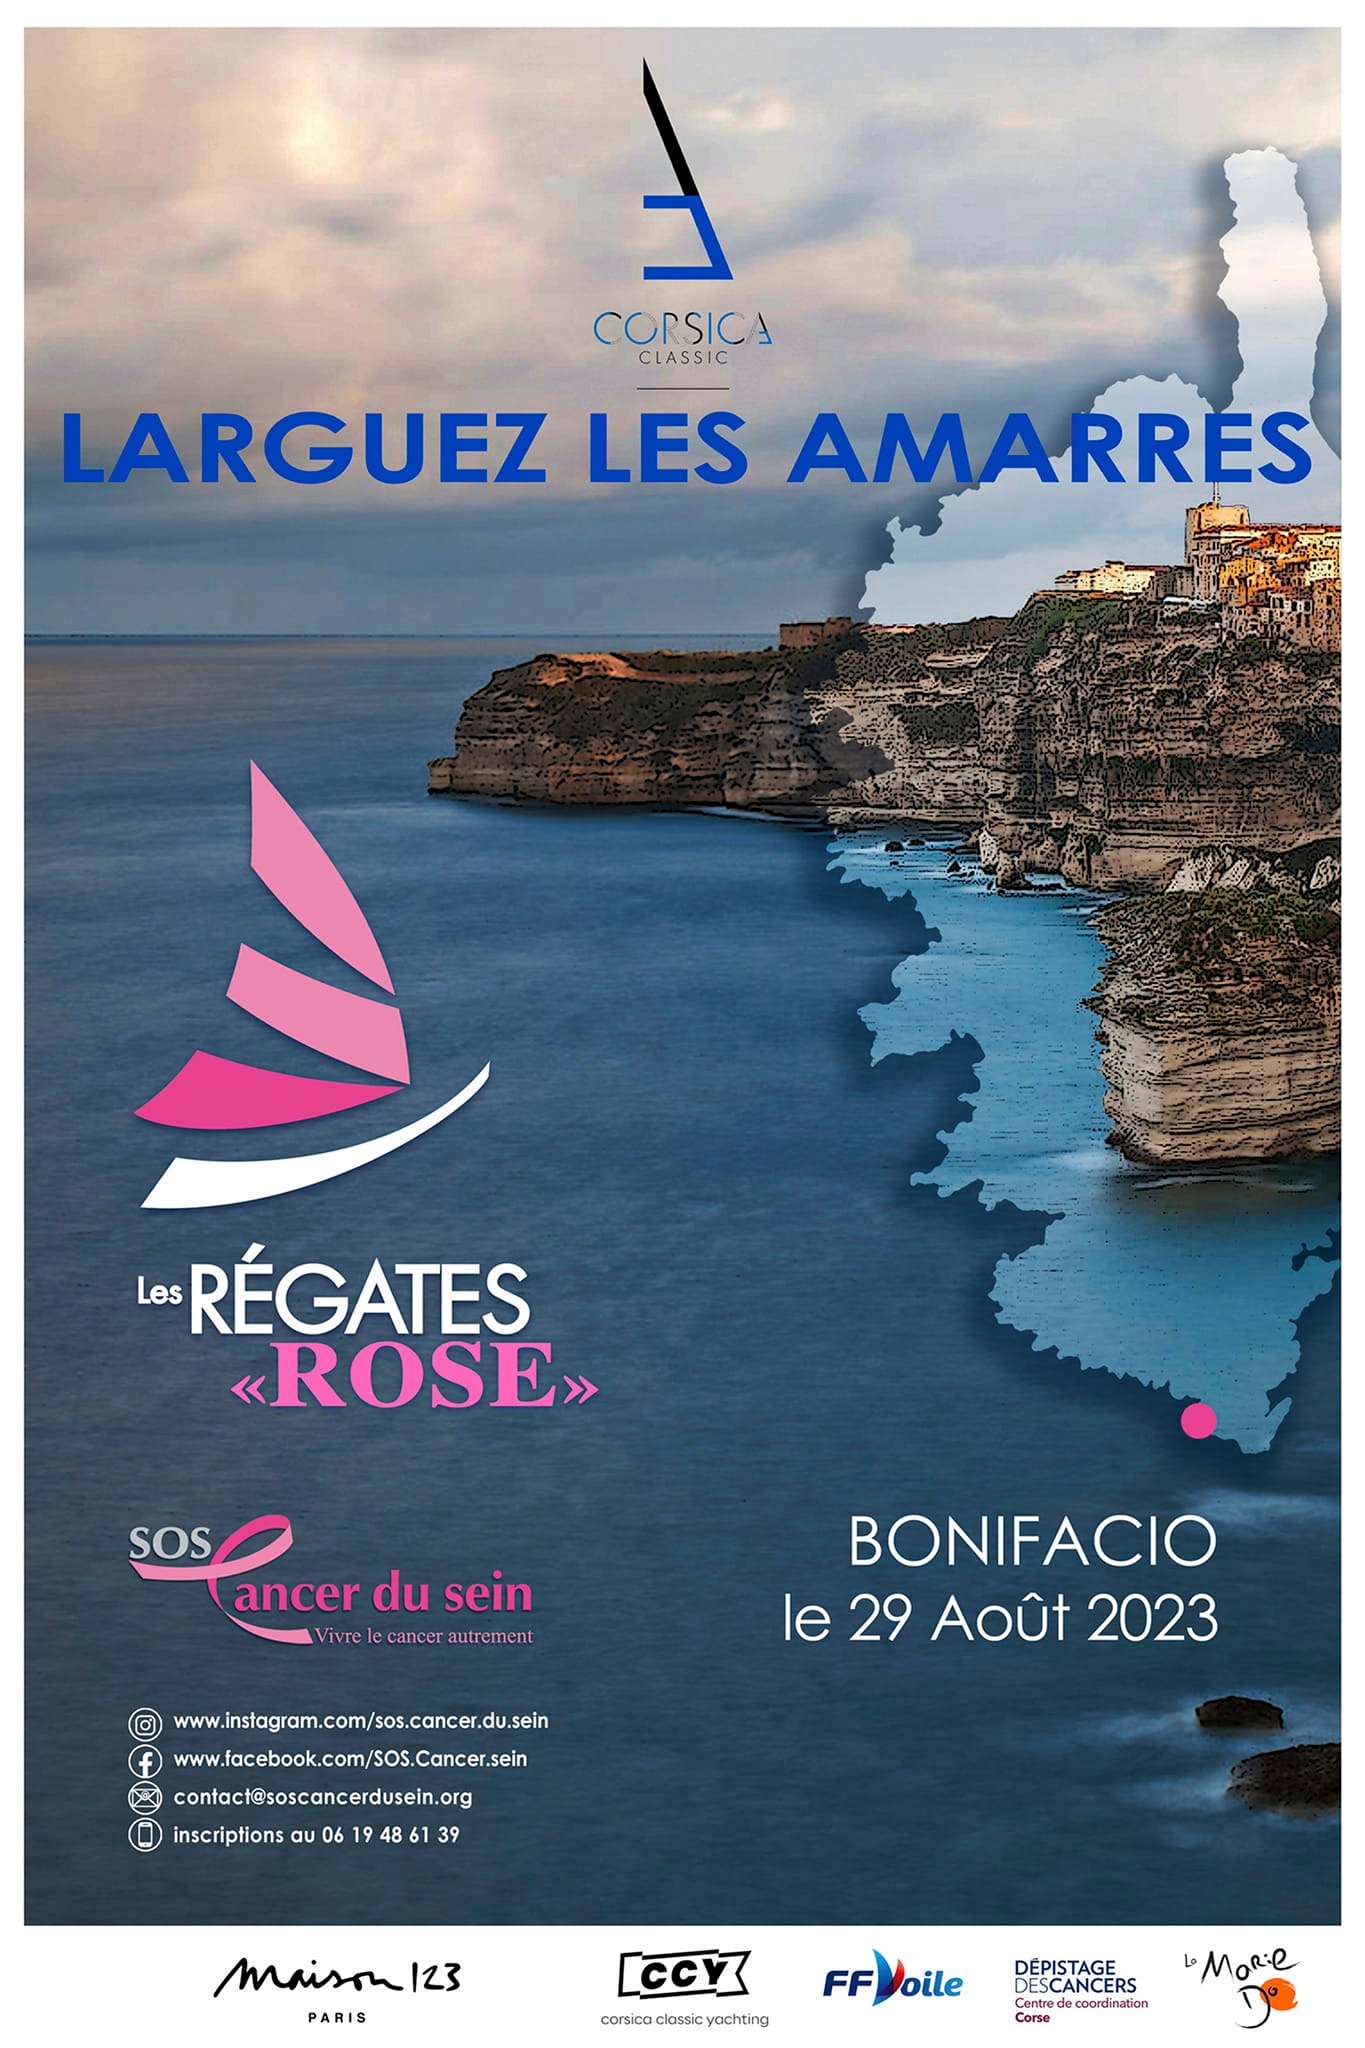 Corsica Classic 2023 x Régates Rose Bonifacio affiche desing by Eric Léon DR